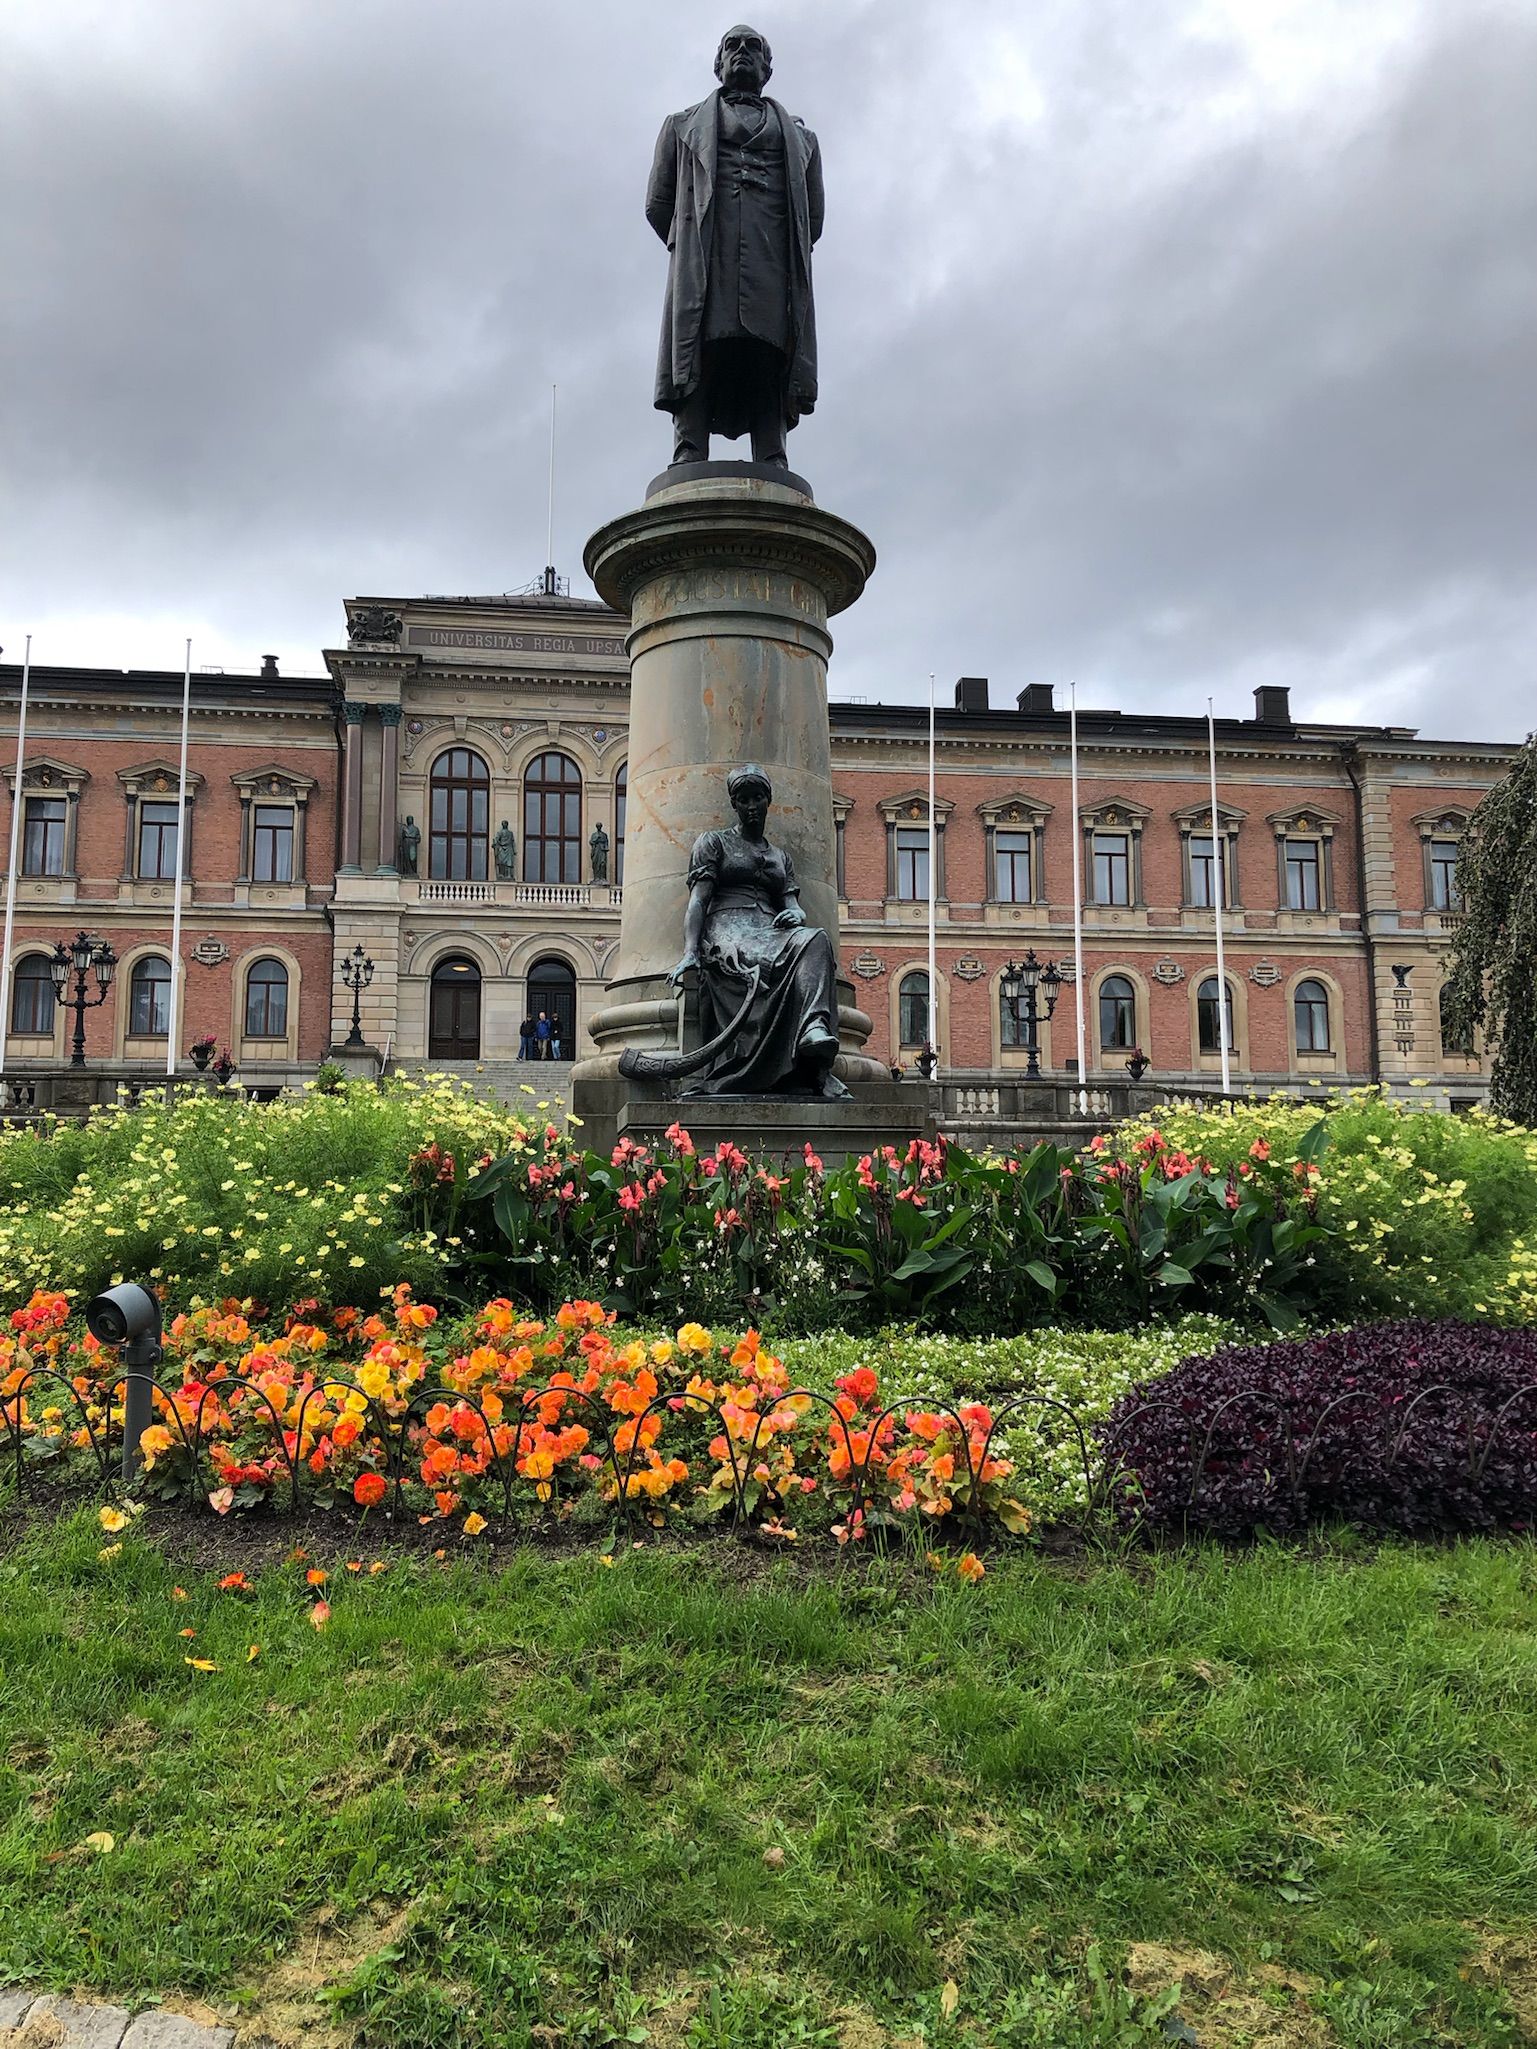 Exchange in Uppsala - Part 4: Exploring the City